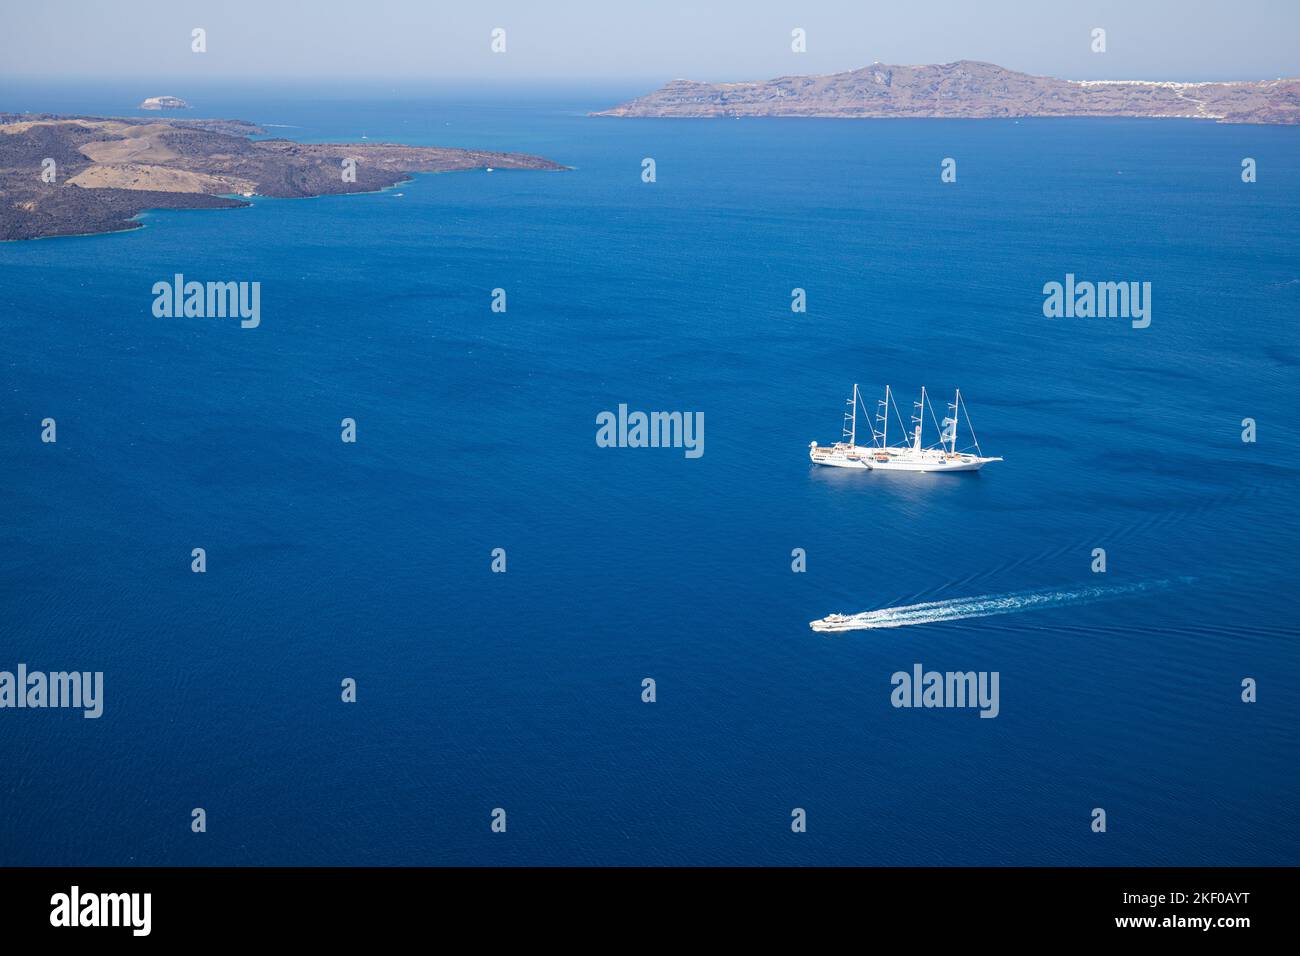 Nave da crociera sul mare blu profondo dell'isola di Santorini, nella baia della Grecia con piccole barche da trasporto. Vacanze estive, tour turismo persone nel Mediterraneo Foto Stock